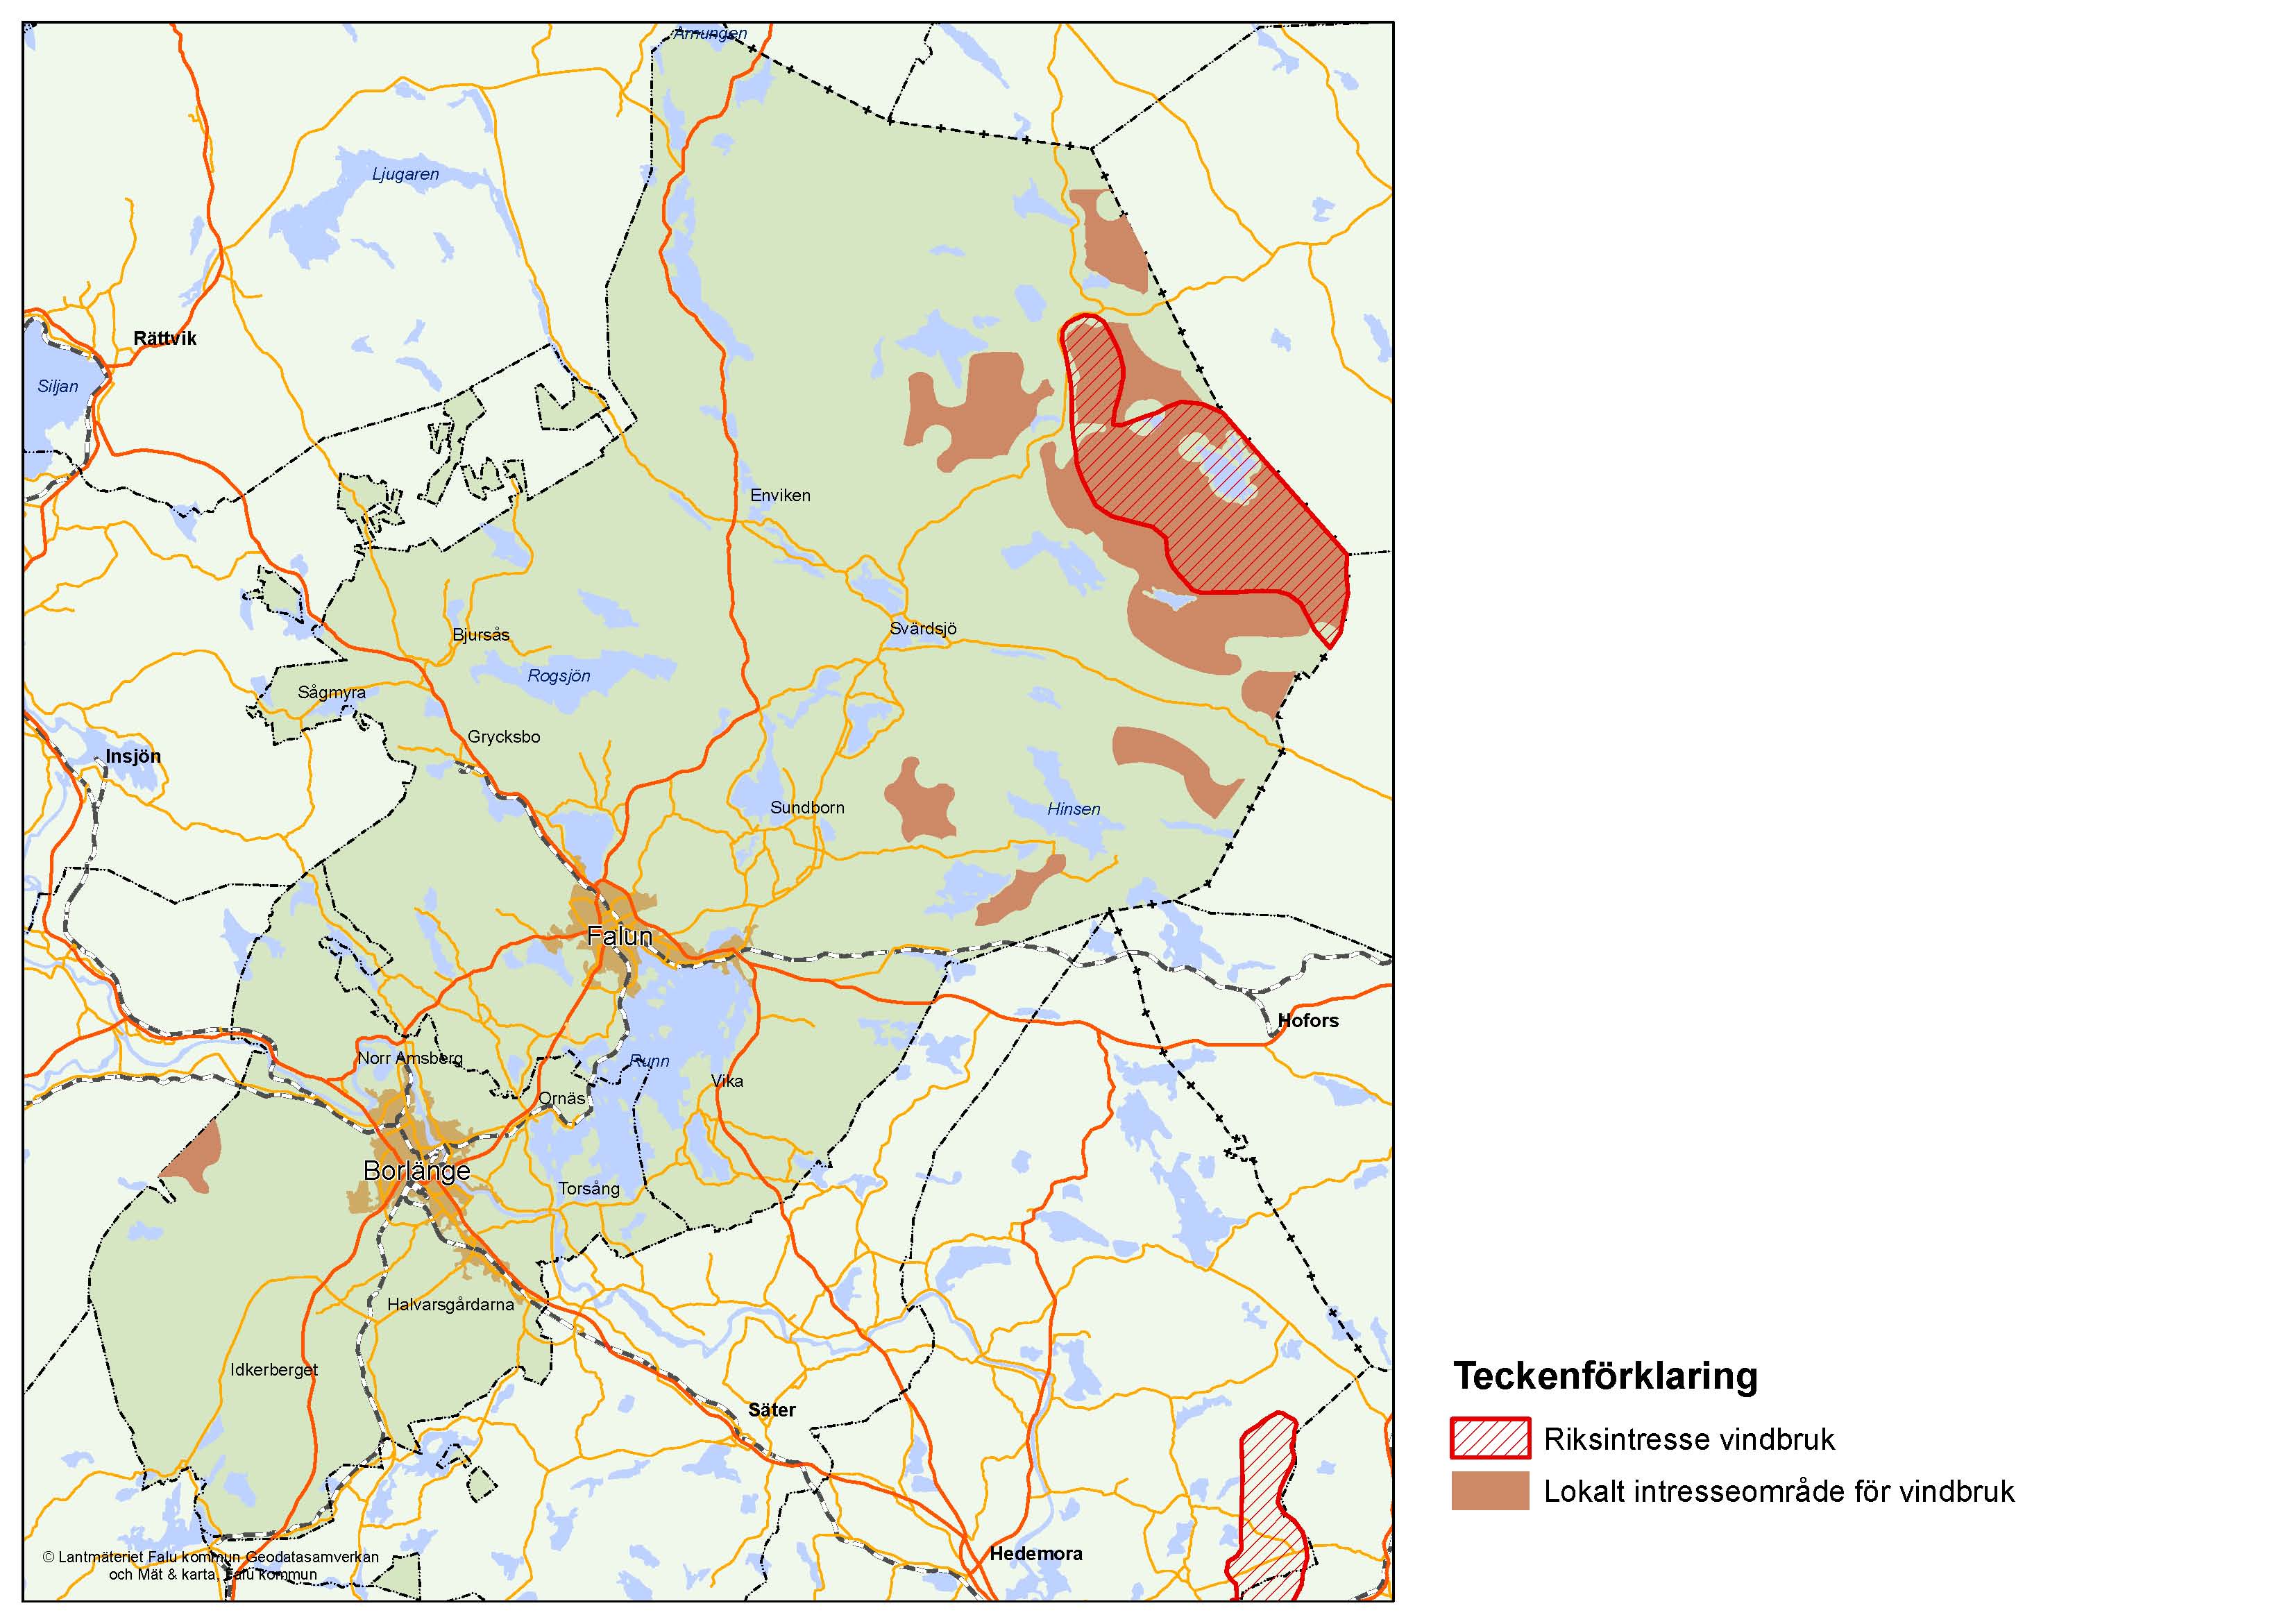 Bild 12.1 Riksintresse och lokala intresseområden för vindbruk (redovisning av riksintressen enligt länsstyrelsens regionala underlagsmaterial RUM som inte är uppdaterat efter beslut om riksintressen i december 2013)